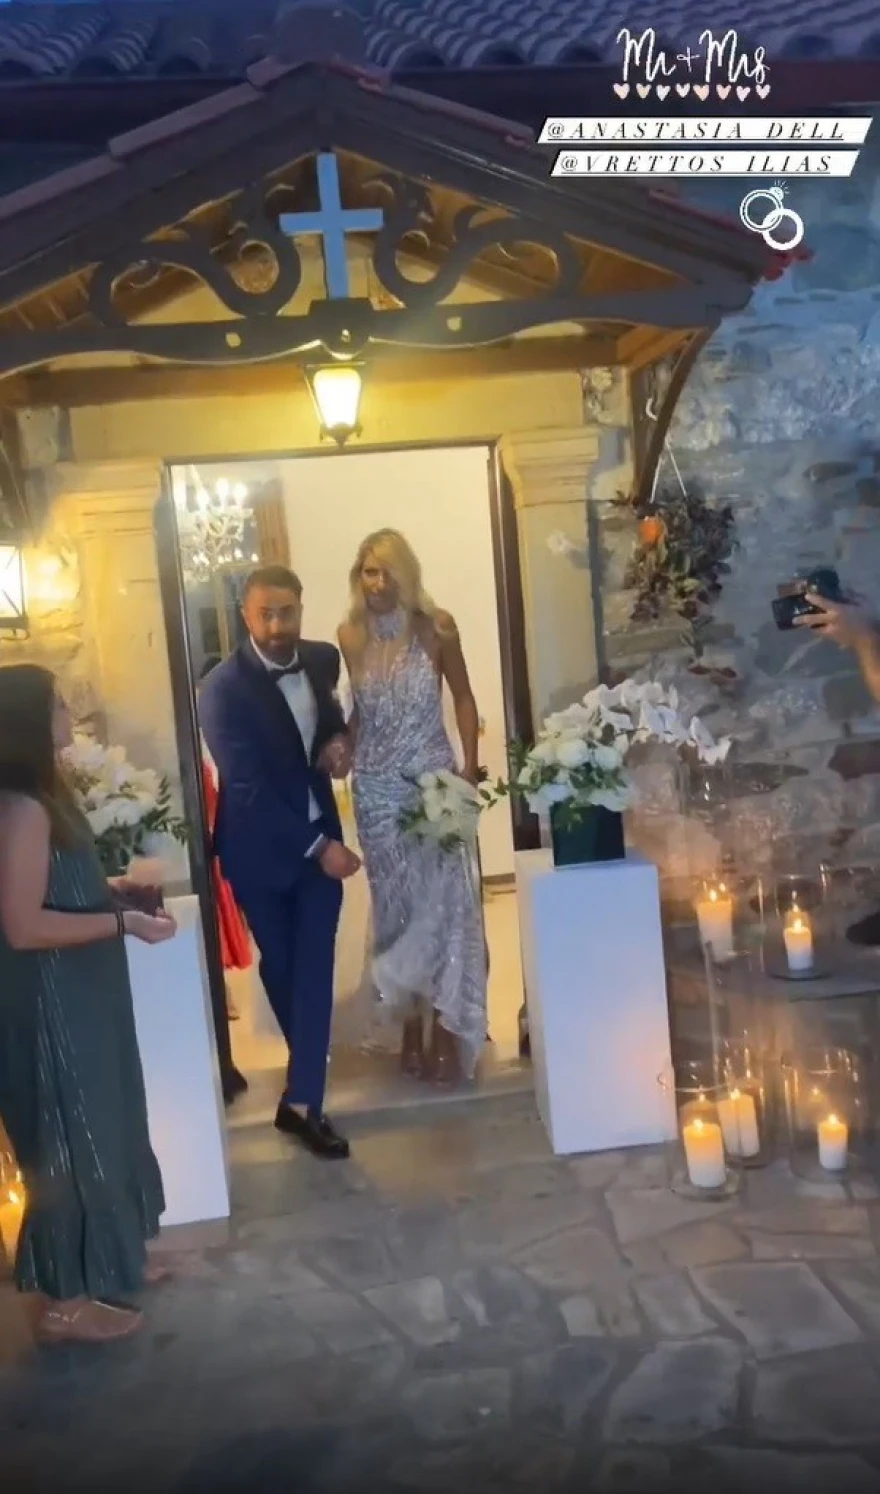  Ηλίας Βρεττός - Αναστασία Δεληγιάννη: Ενώθηκαν με τα ιερά δεσμά του γάμου ΦΩΤΟ - ΒΙΝΤΕΟ 